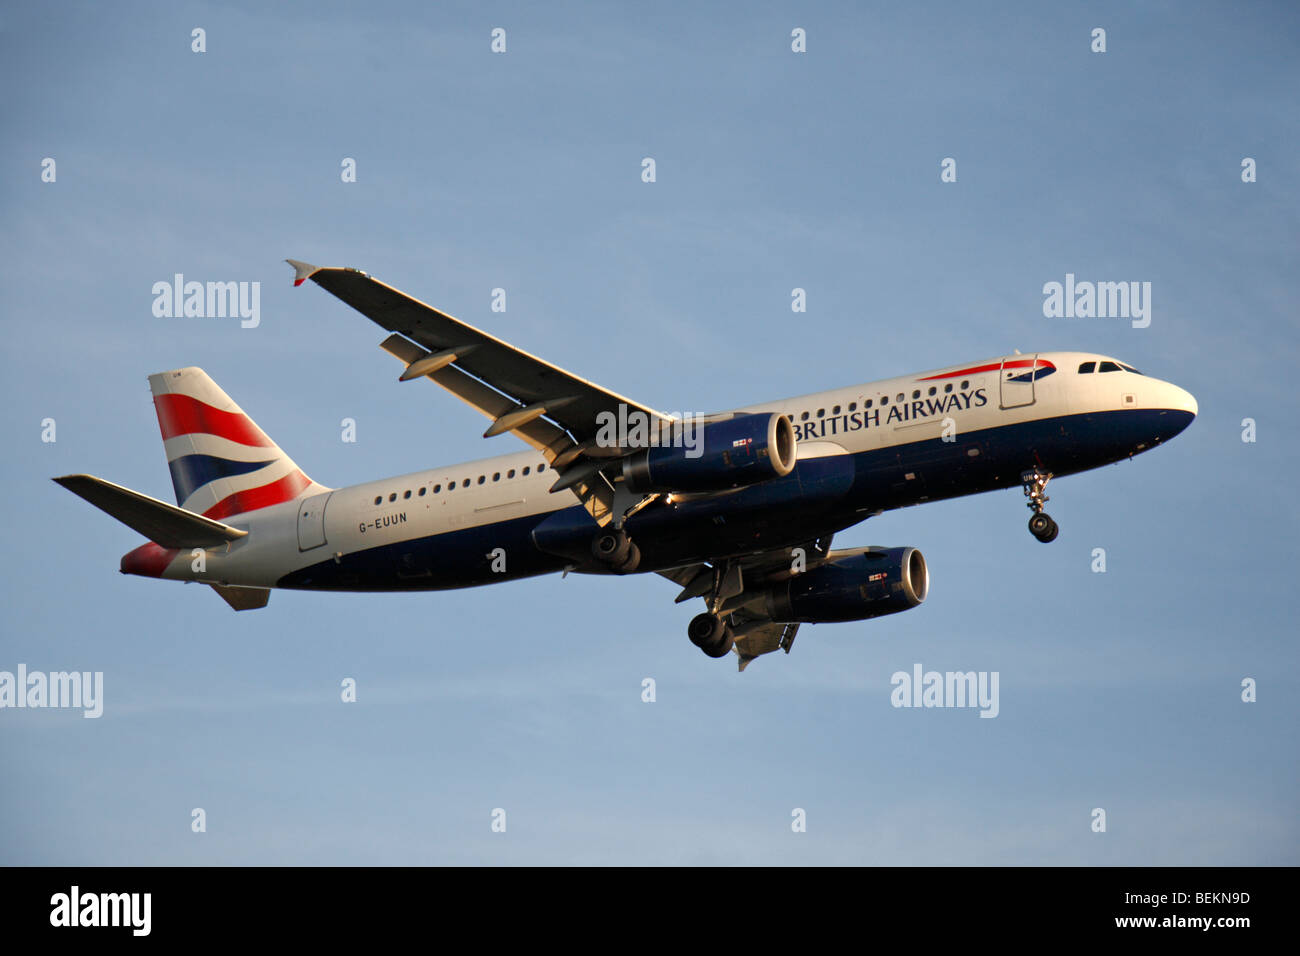 Un British Airways (BA) Airbus A320-232 en venant d'atterrir à l'aéroport de Londres Heathrow, Royaume-Uni. Août 2009. (G-EUUN) Banque D'Images